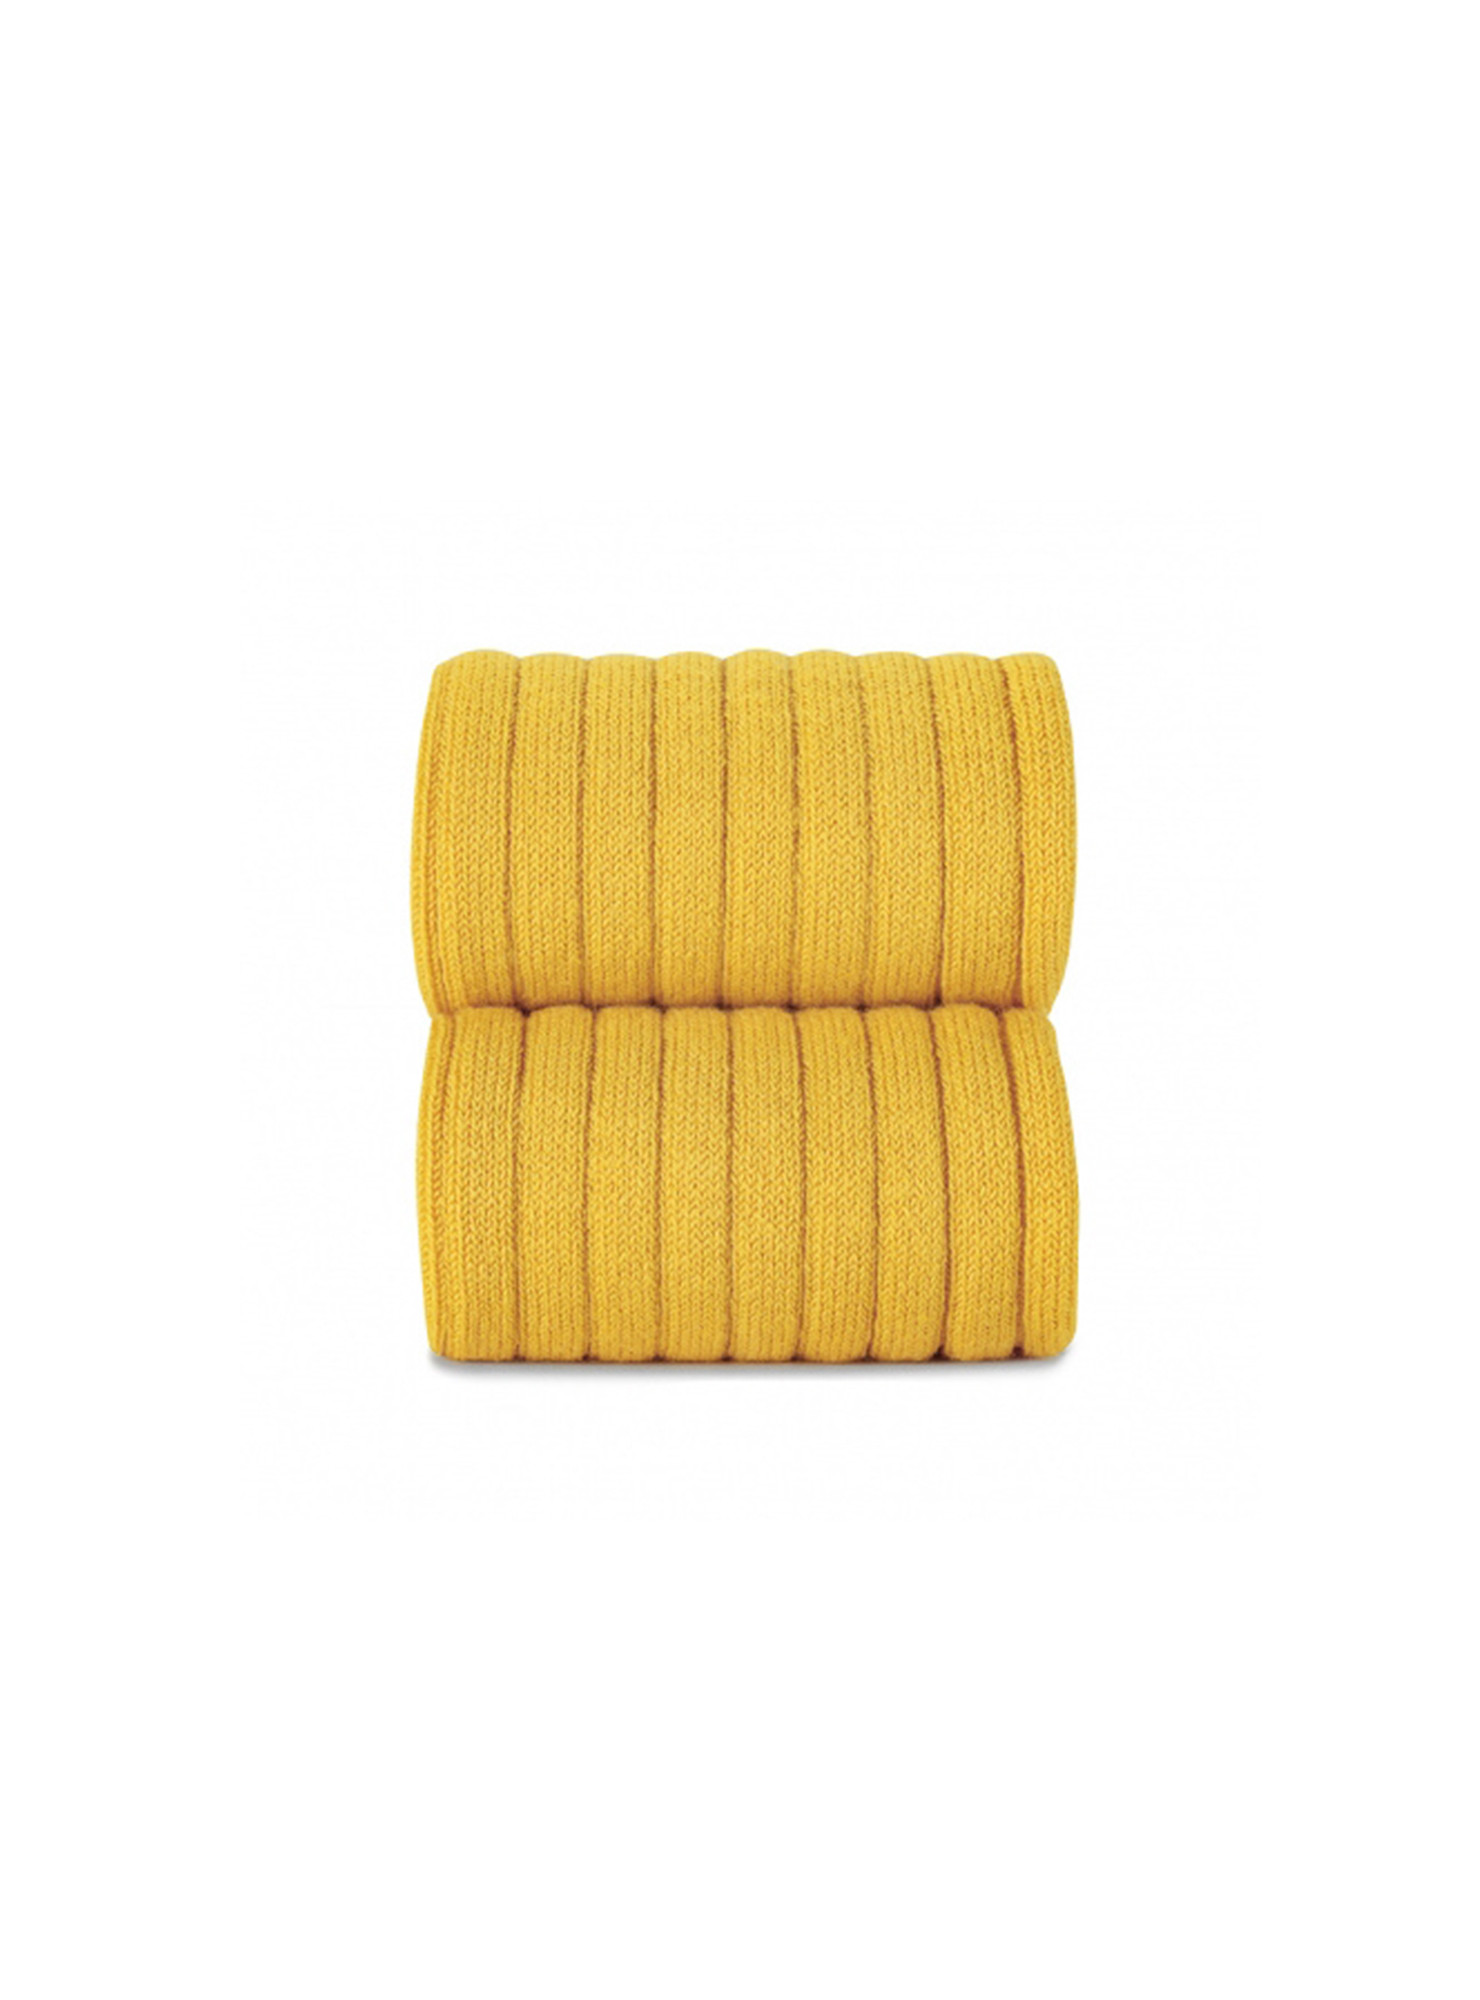 Collants-amarillo 630 mimosa